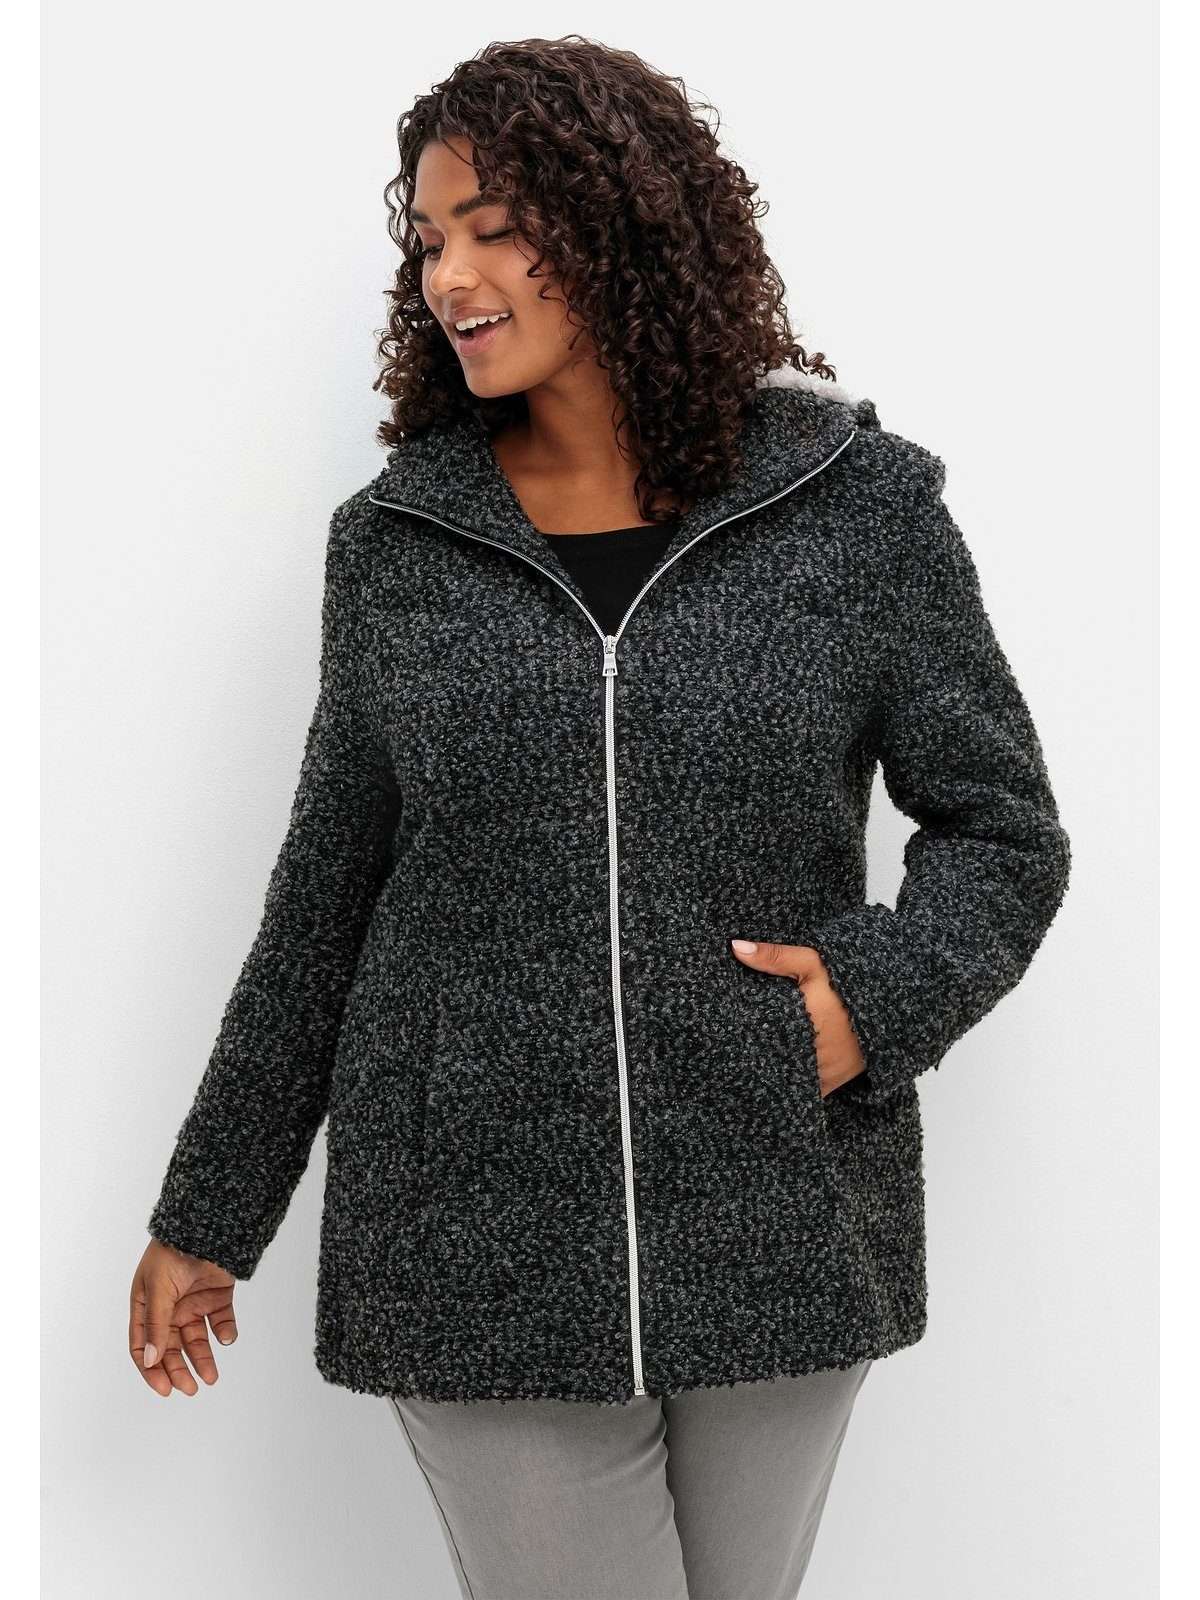 Короткое пальто больших размеров в шерстяном исполнении.